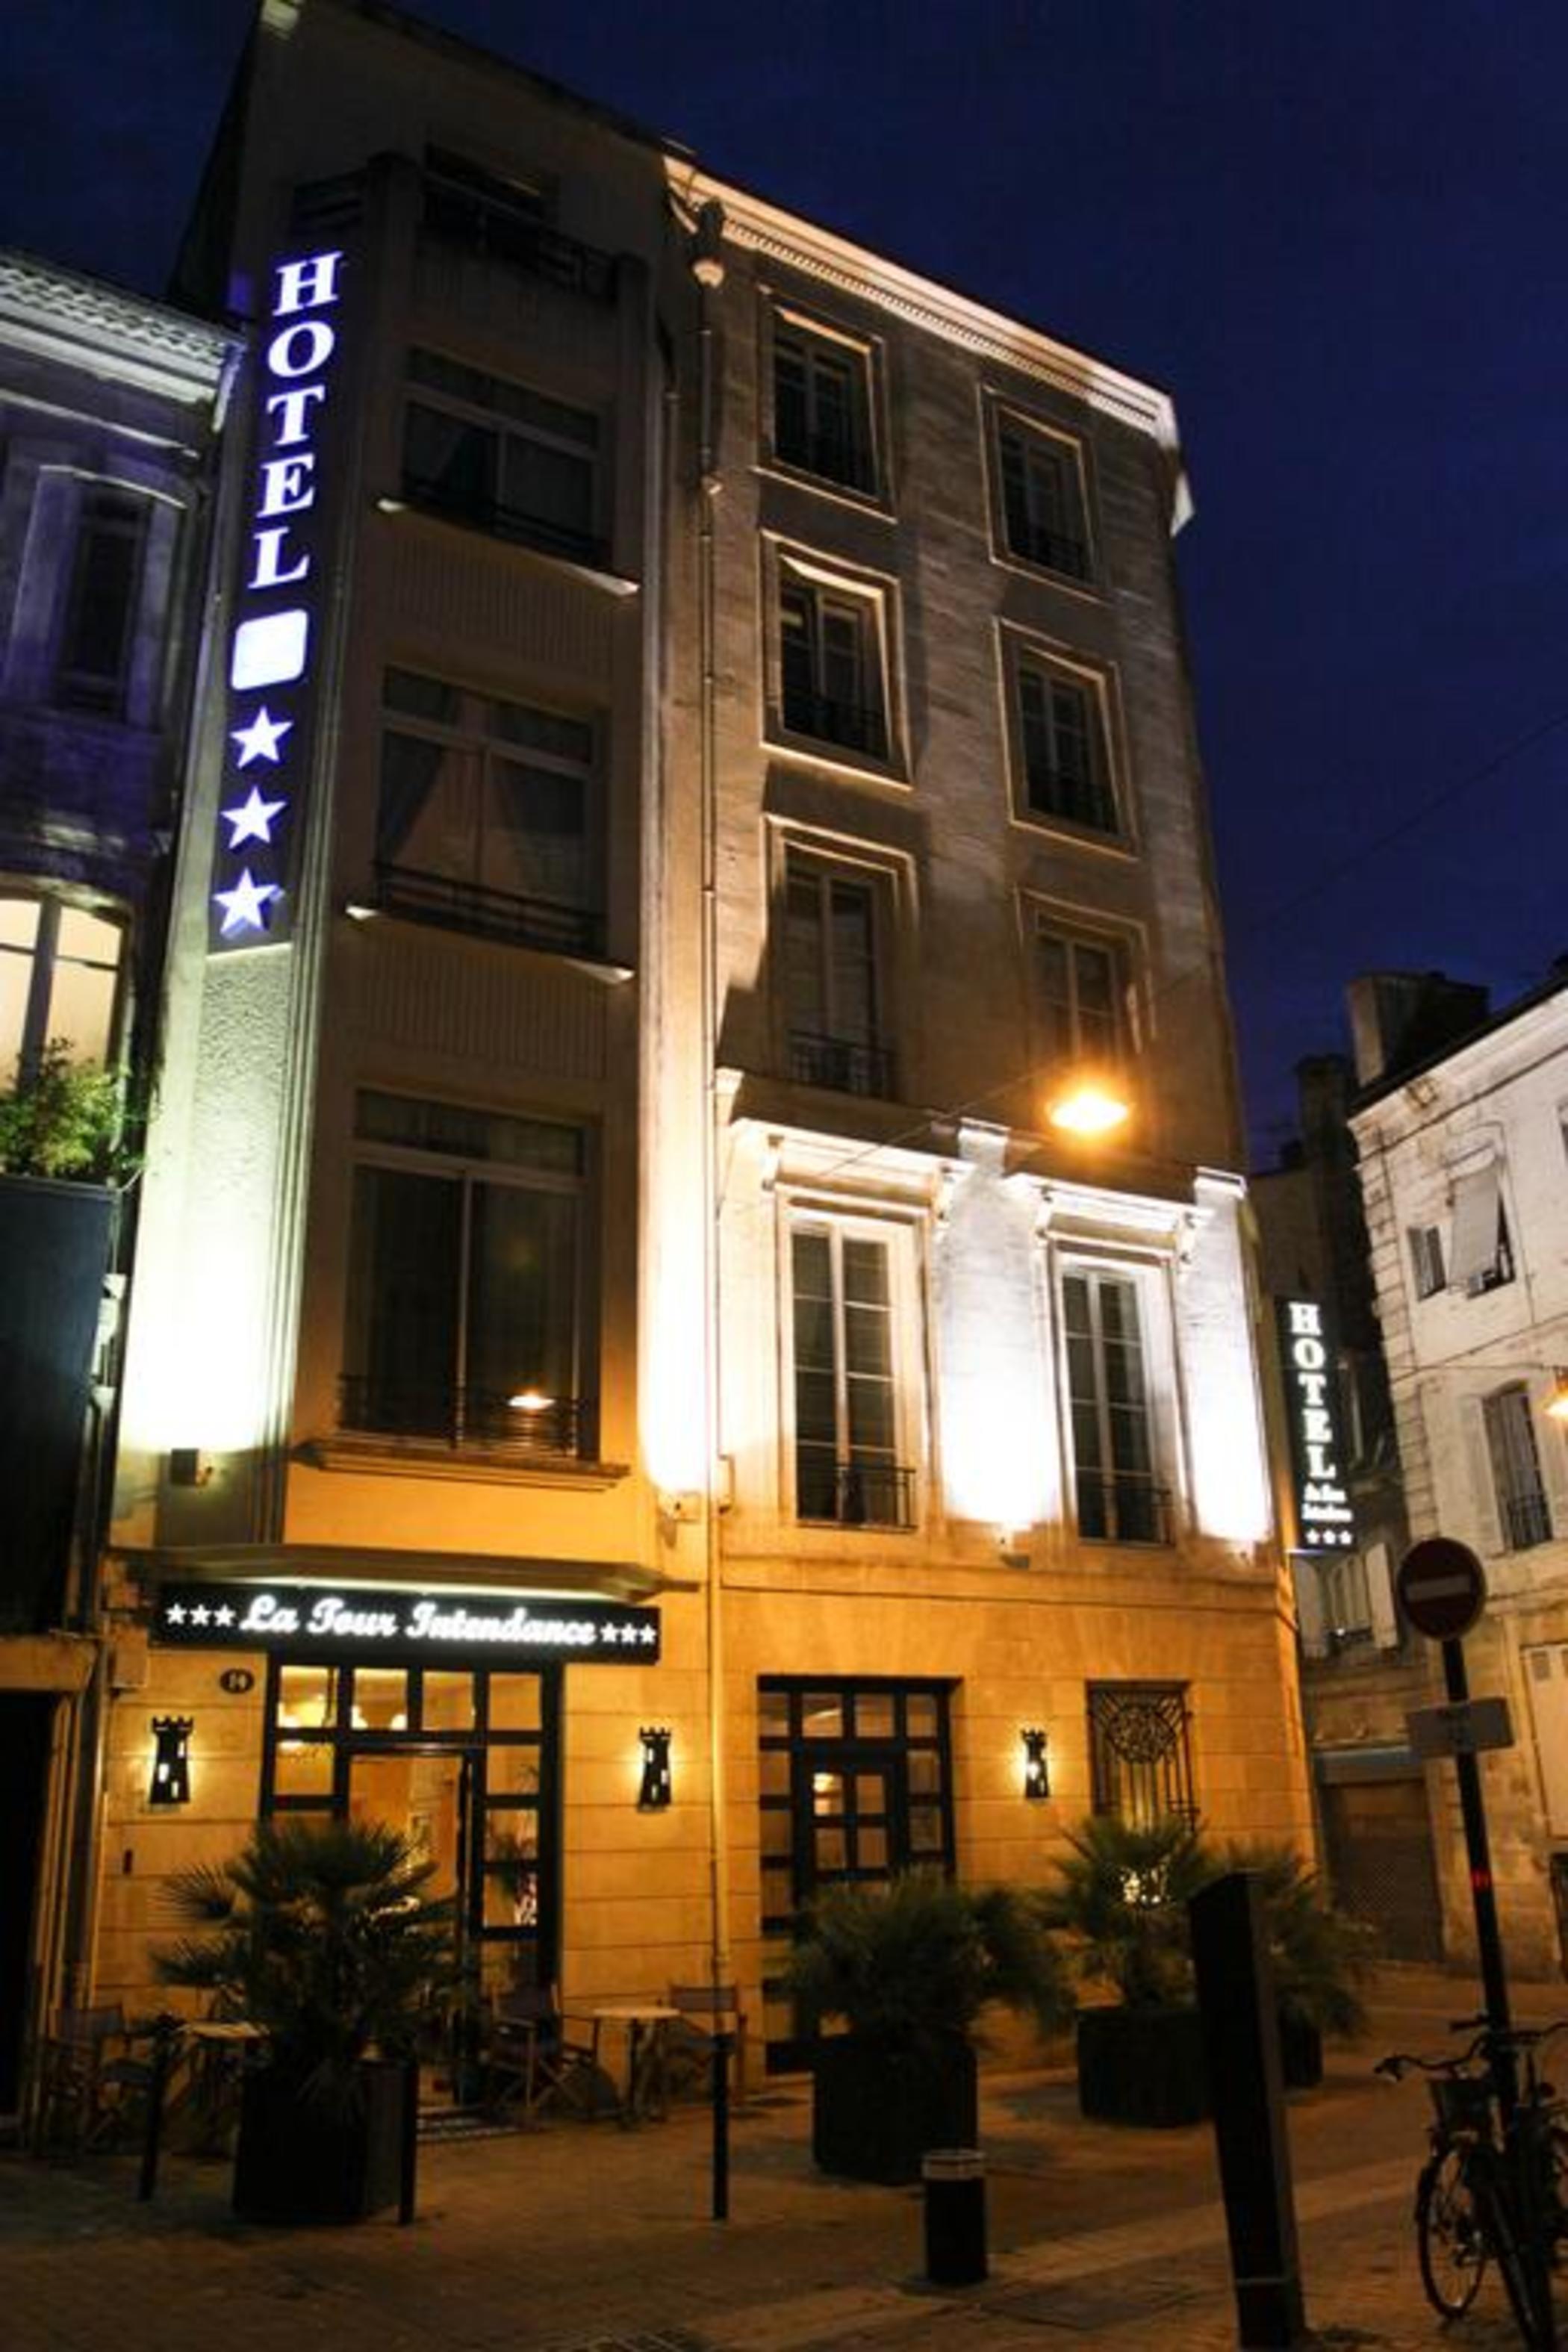 Hotel La Tour Intendance Bordeaux Exteriér fotografie